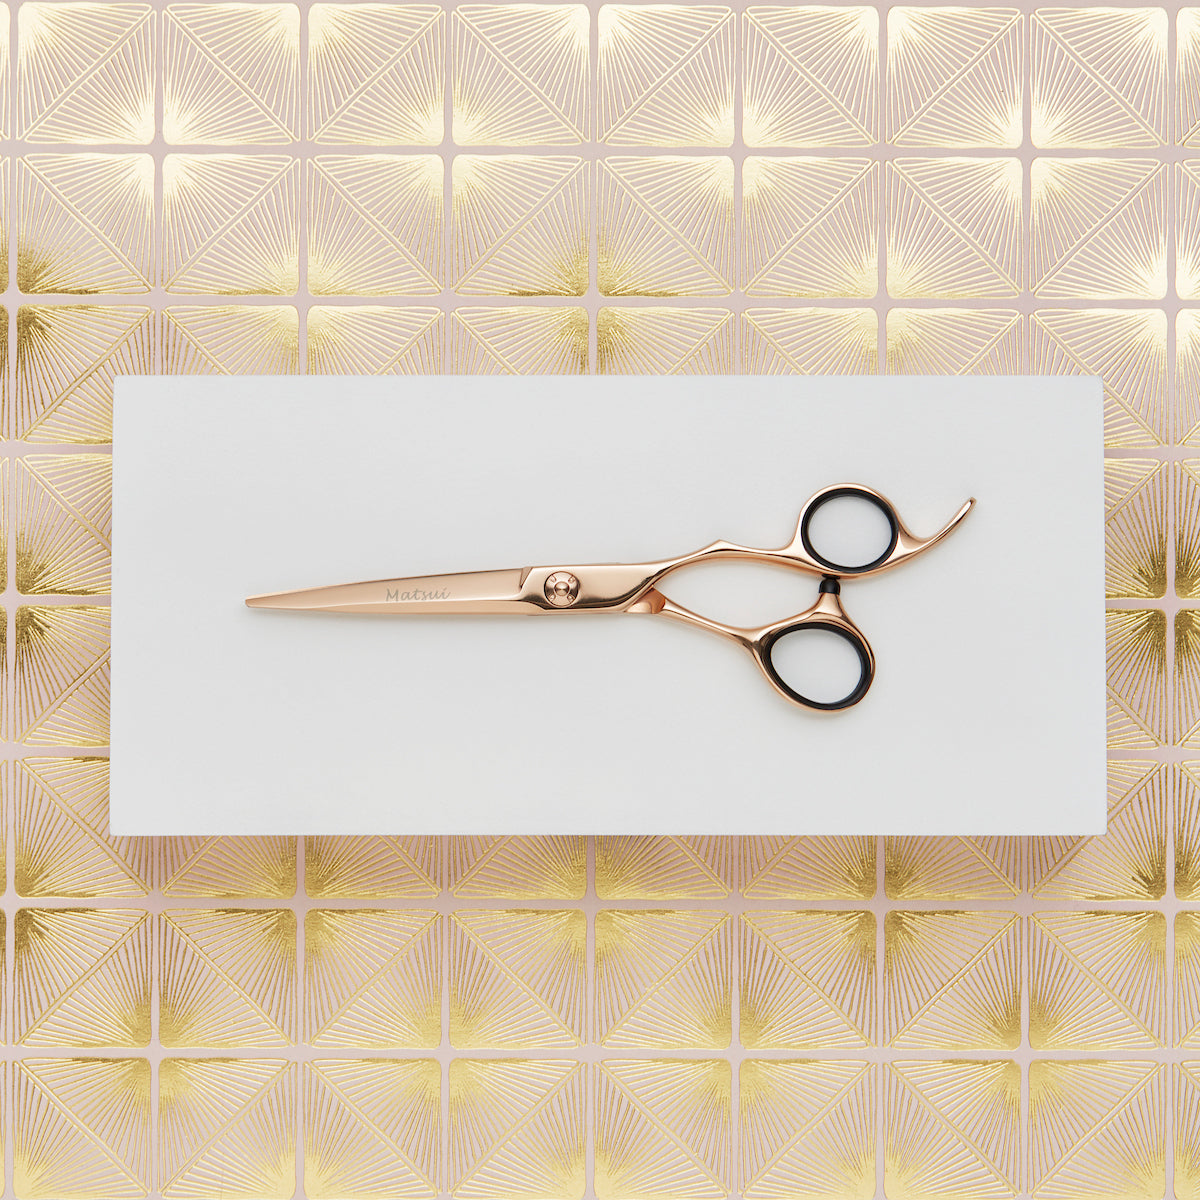 Tsuchi 6.0 Hair Scissors Rose Gold Titanium Hair Shears